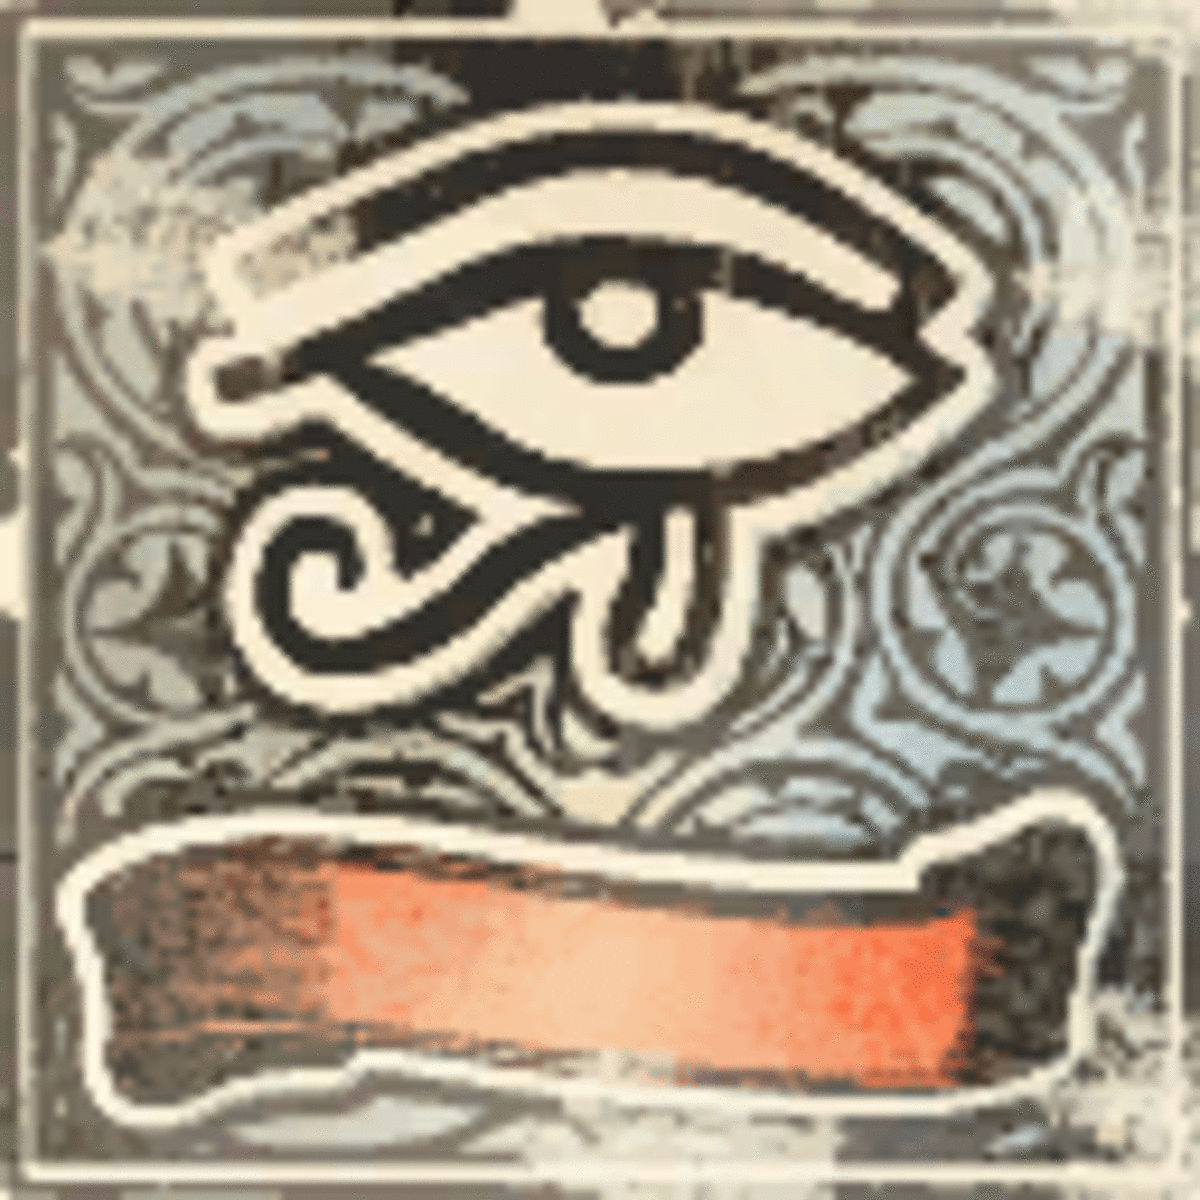 elder-scrolls-iv-oblivion-mages-guild-ranks-and-quests